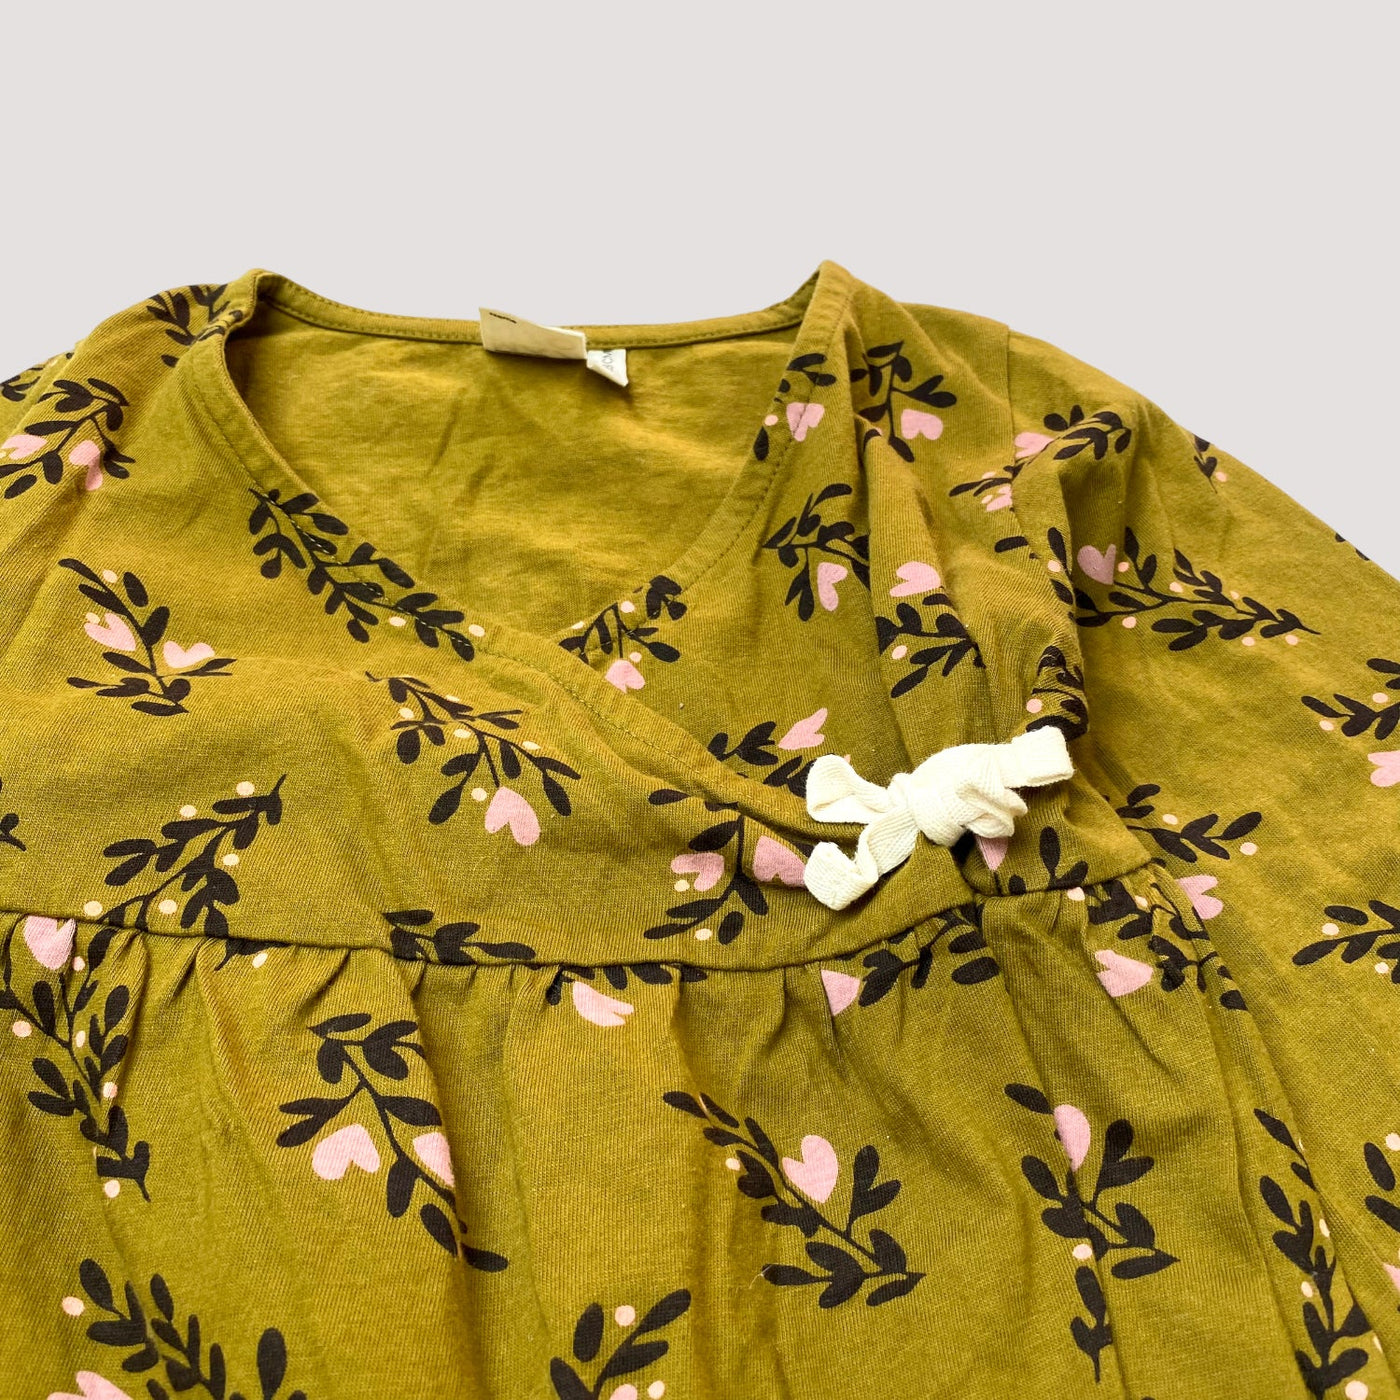 Mainio wrap shirt, secret garden | 122/128cm